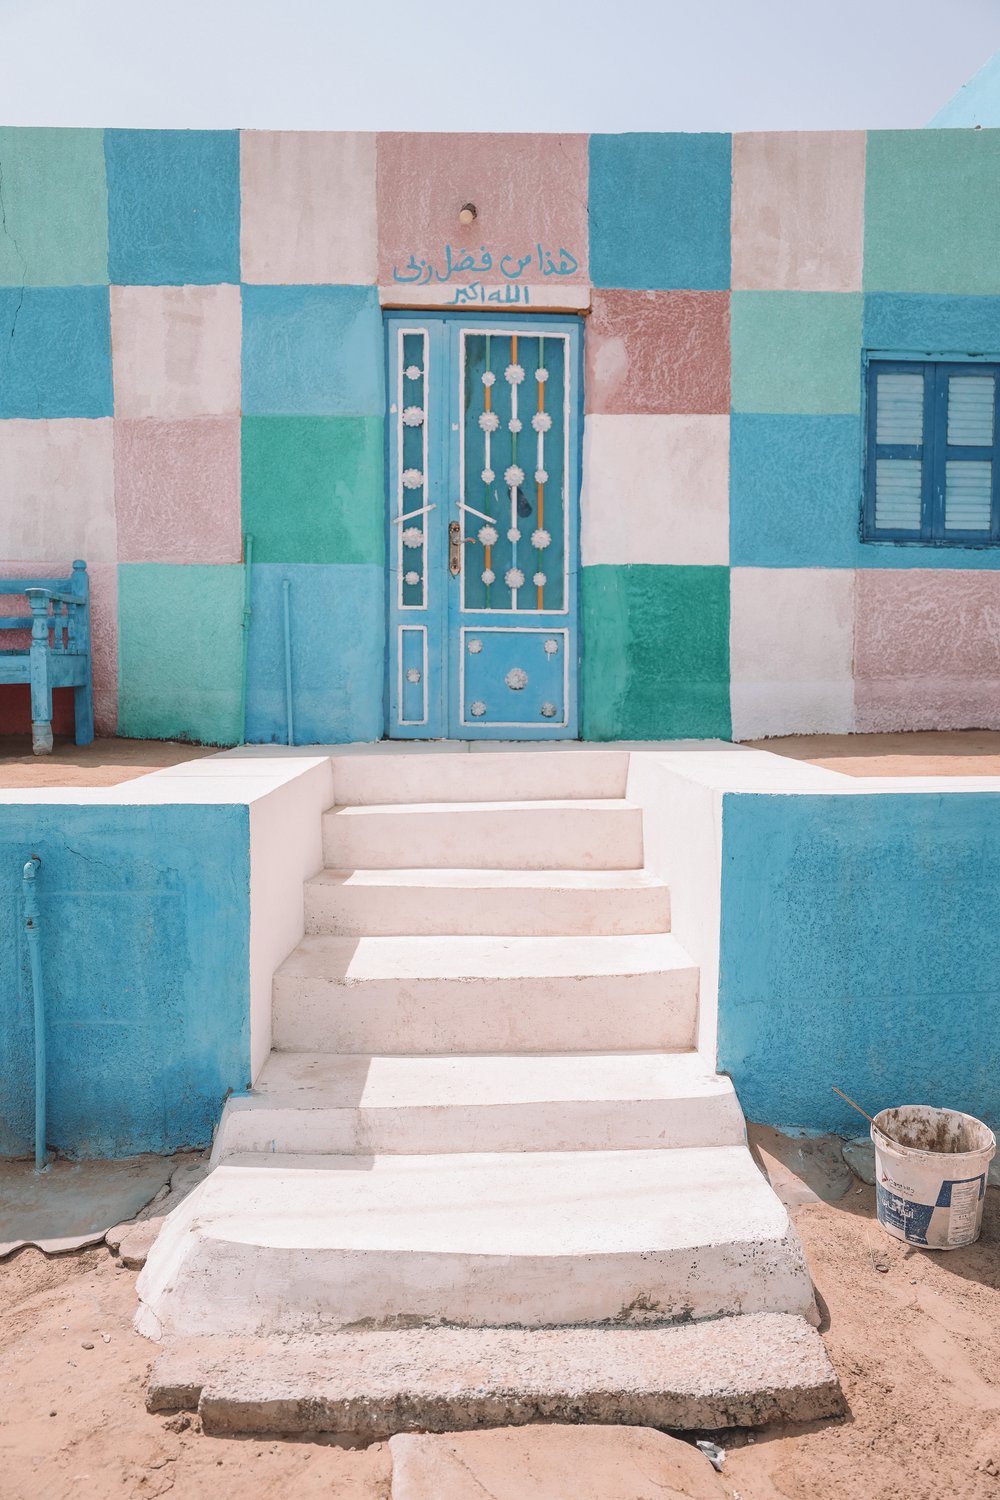 Colourful staircase - Nubian Village - Aswan - Egypt